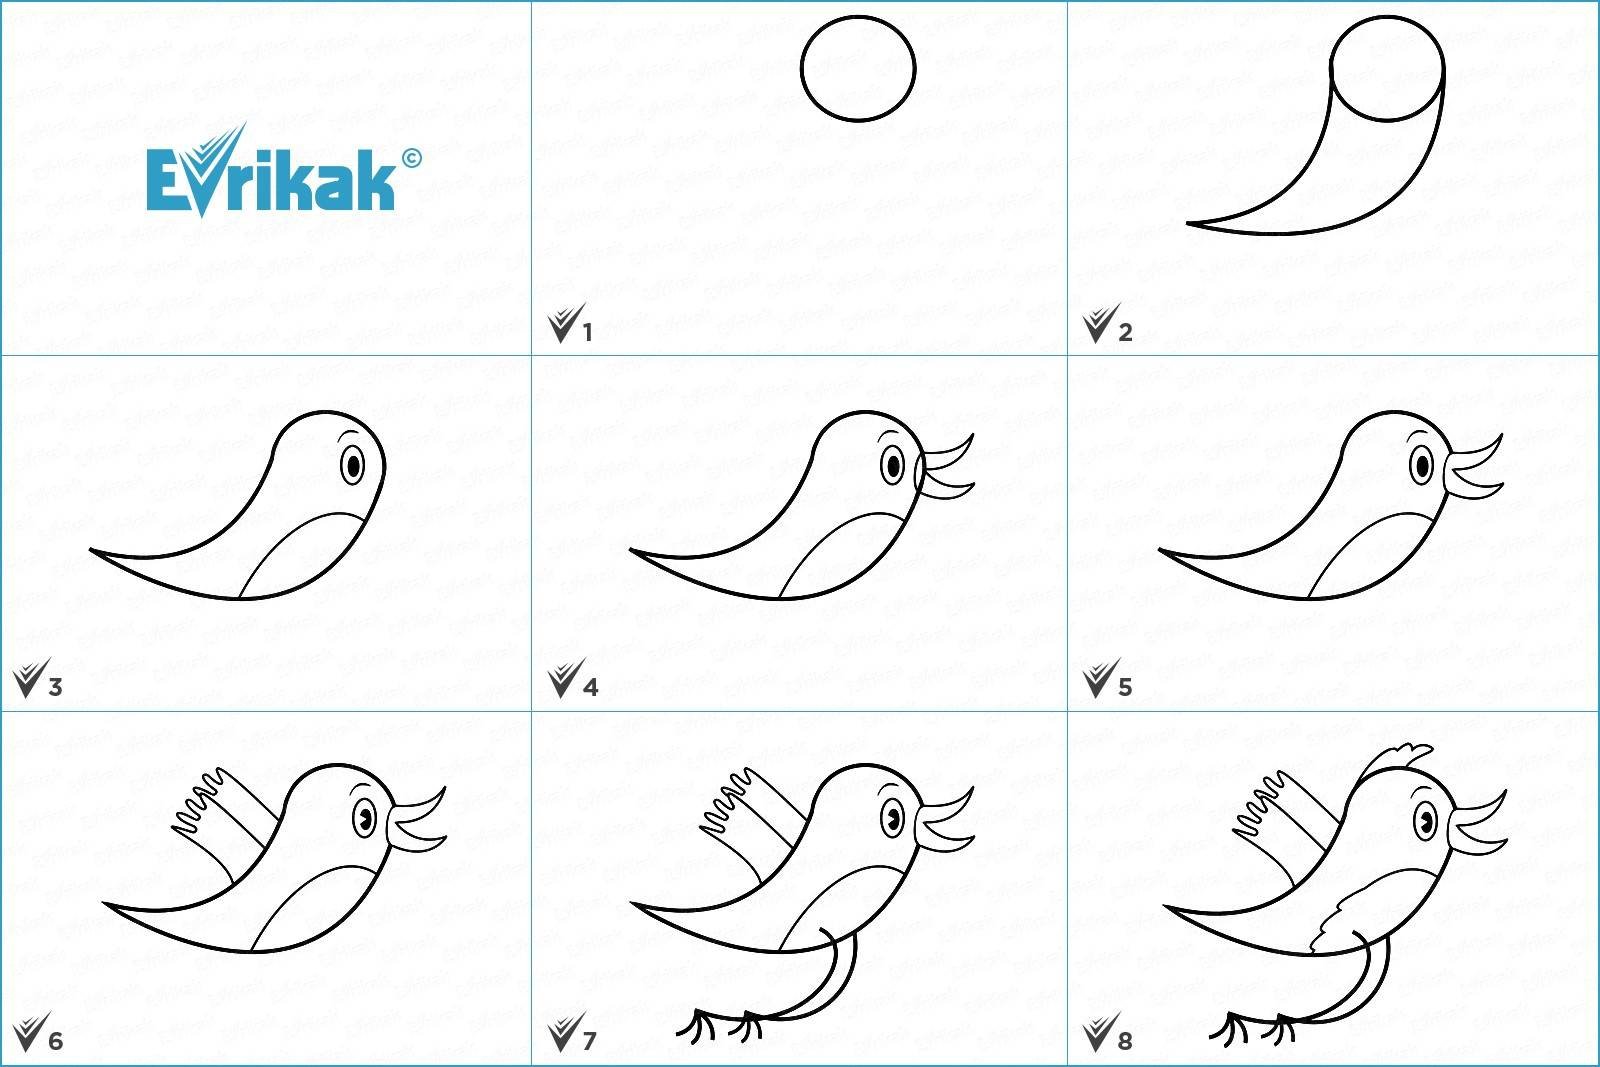 Схема рисования птицы для детей